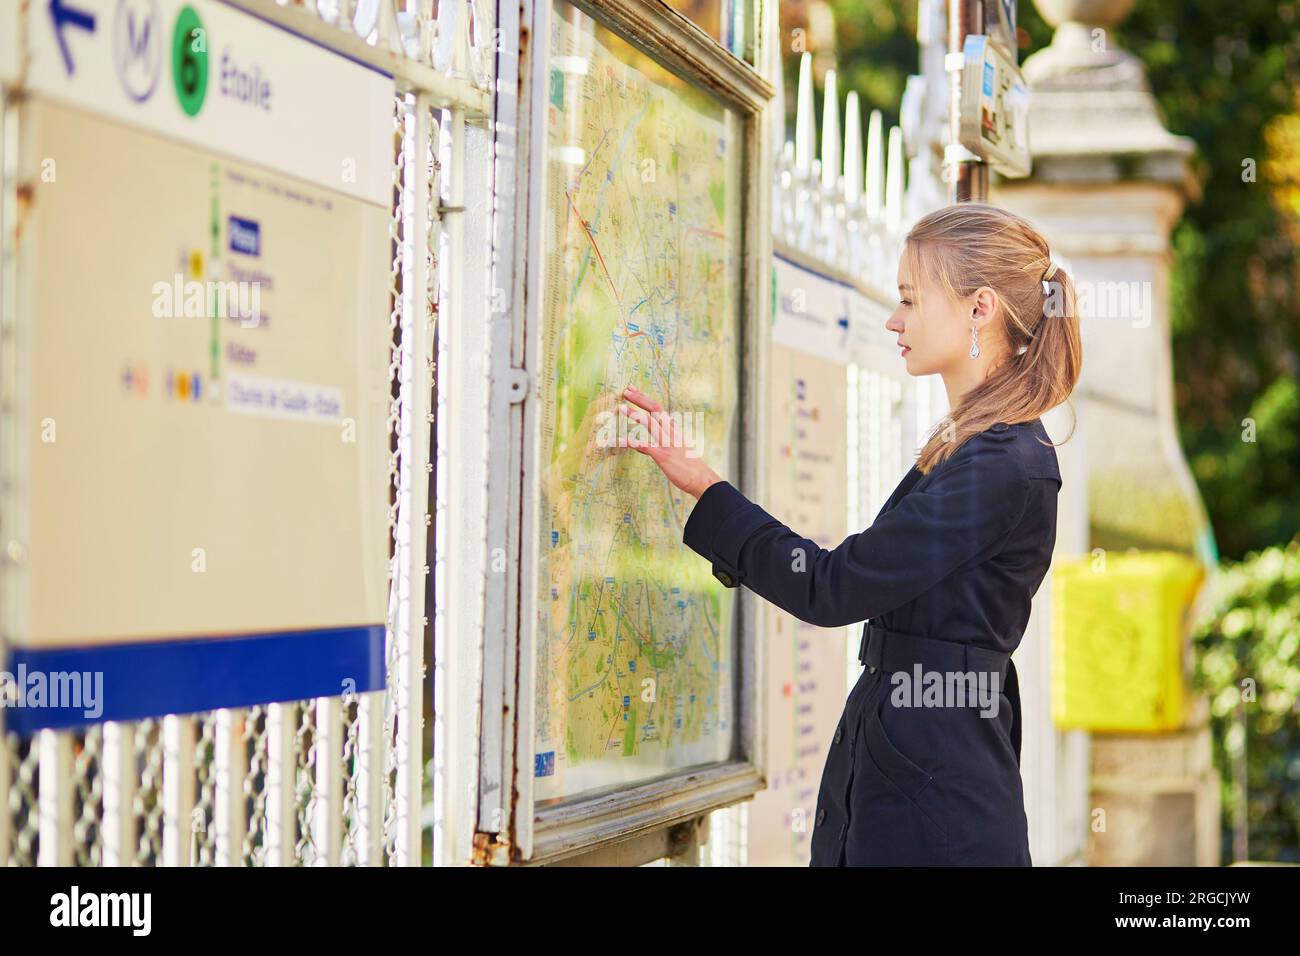 Jeune belle femme parisienne près du plan de métro, à la recherche de la direction Banque D'Images